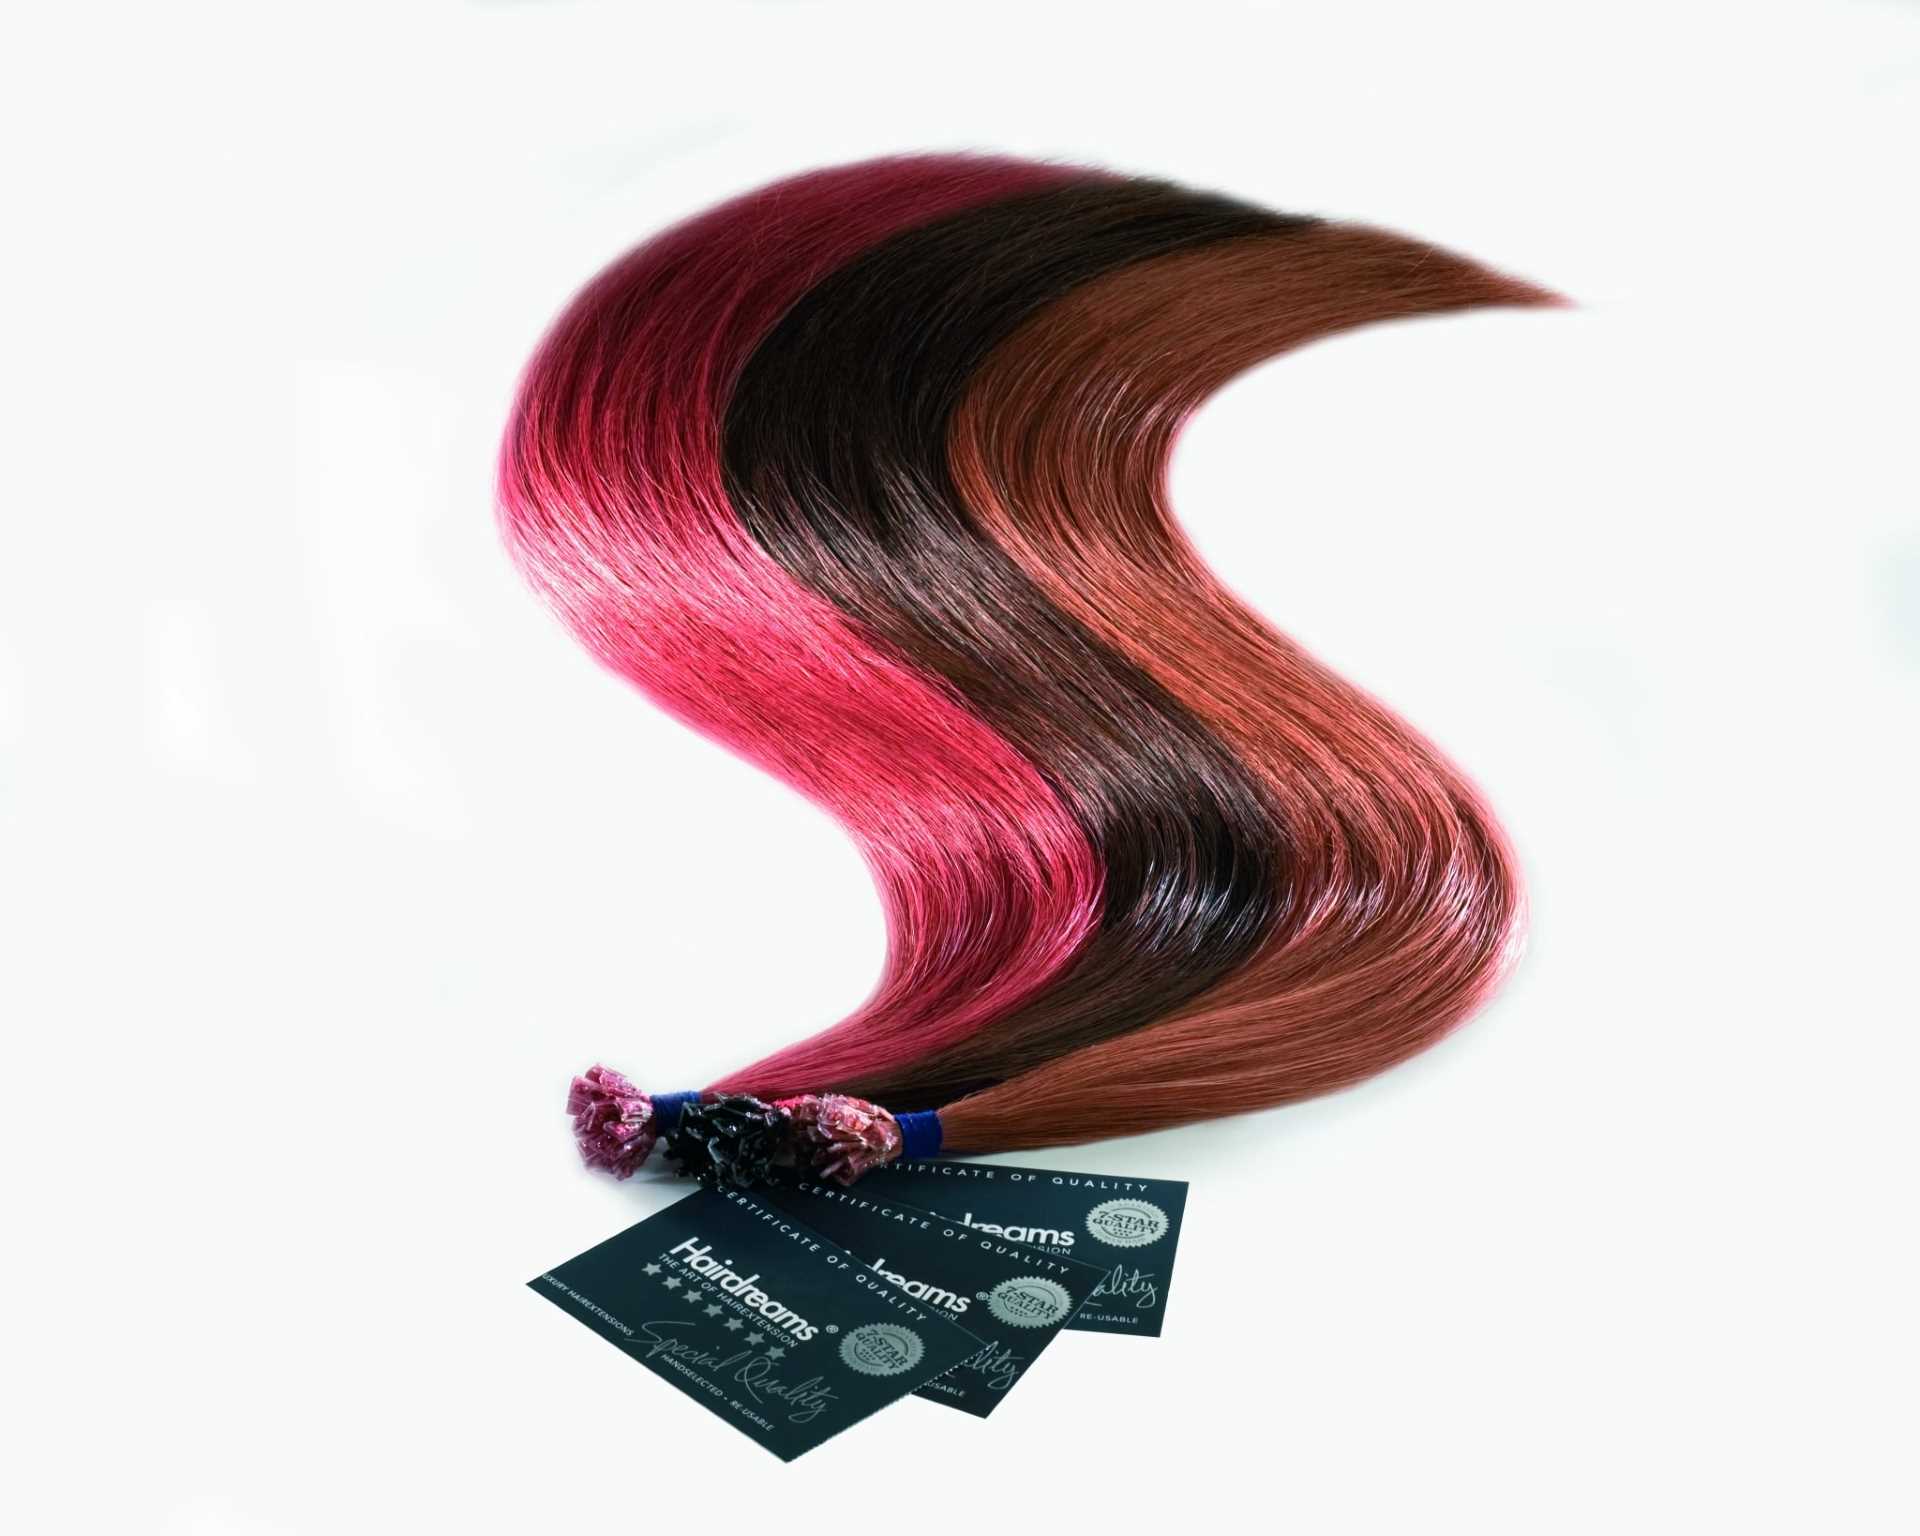 drei Strähen von Hairdreams 7-Sterne-Haare in den Farben pink, dunkelbraun und hellbraun mit rötlichen Stich